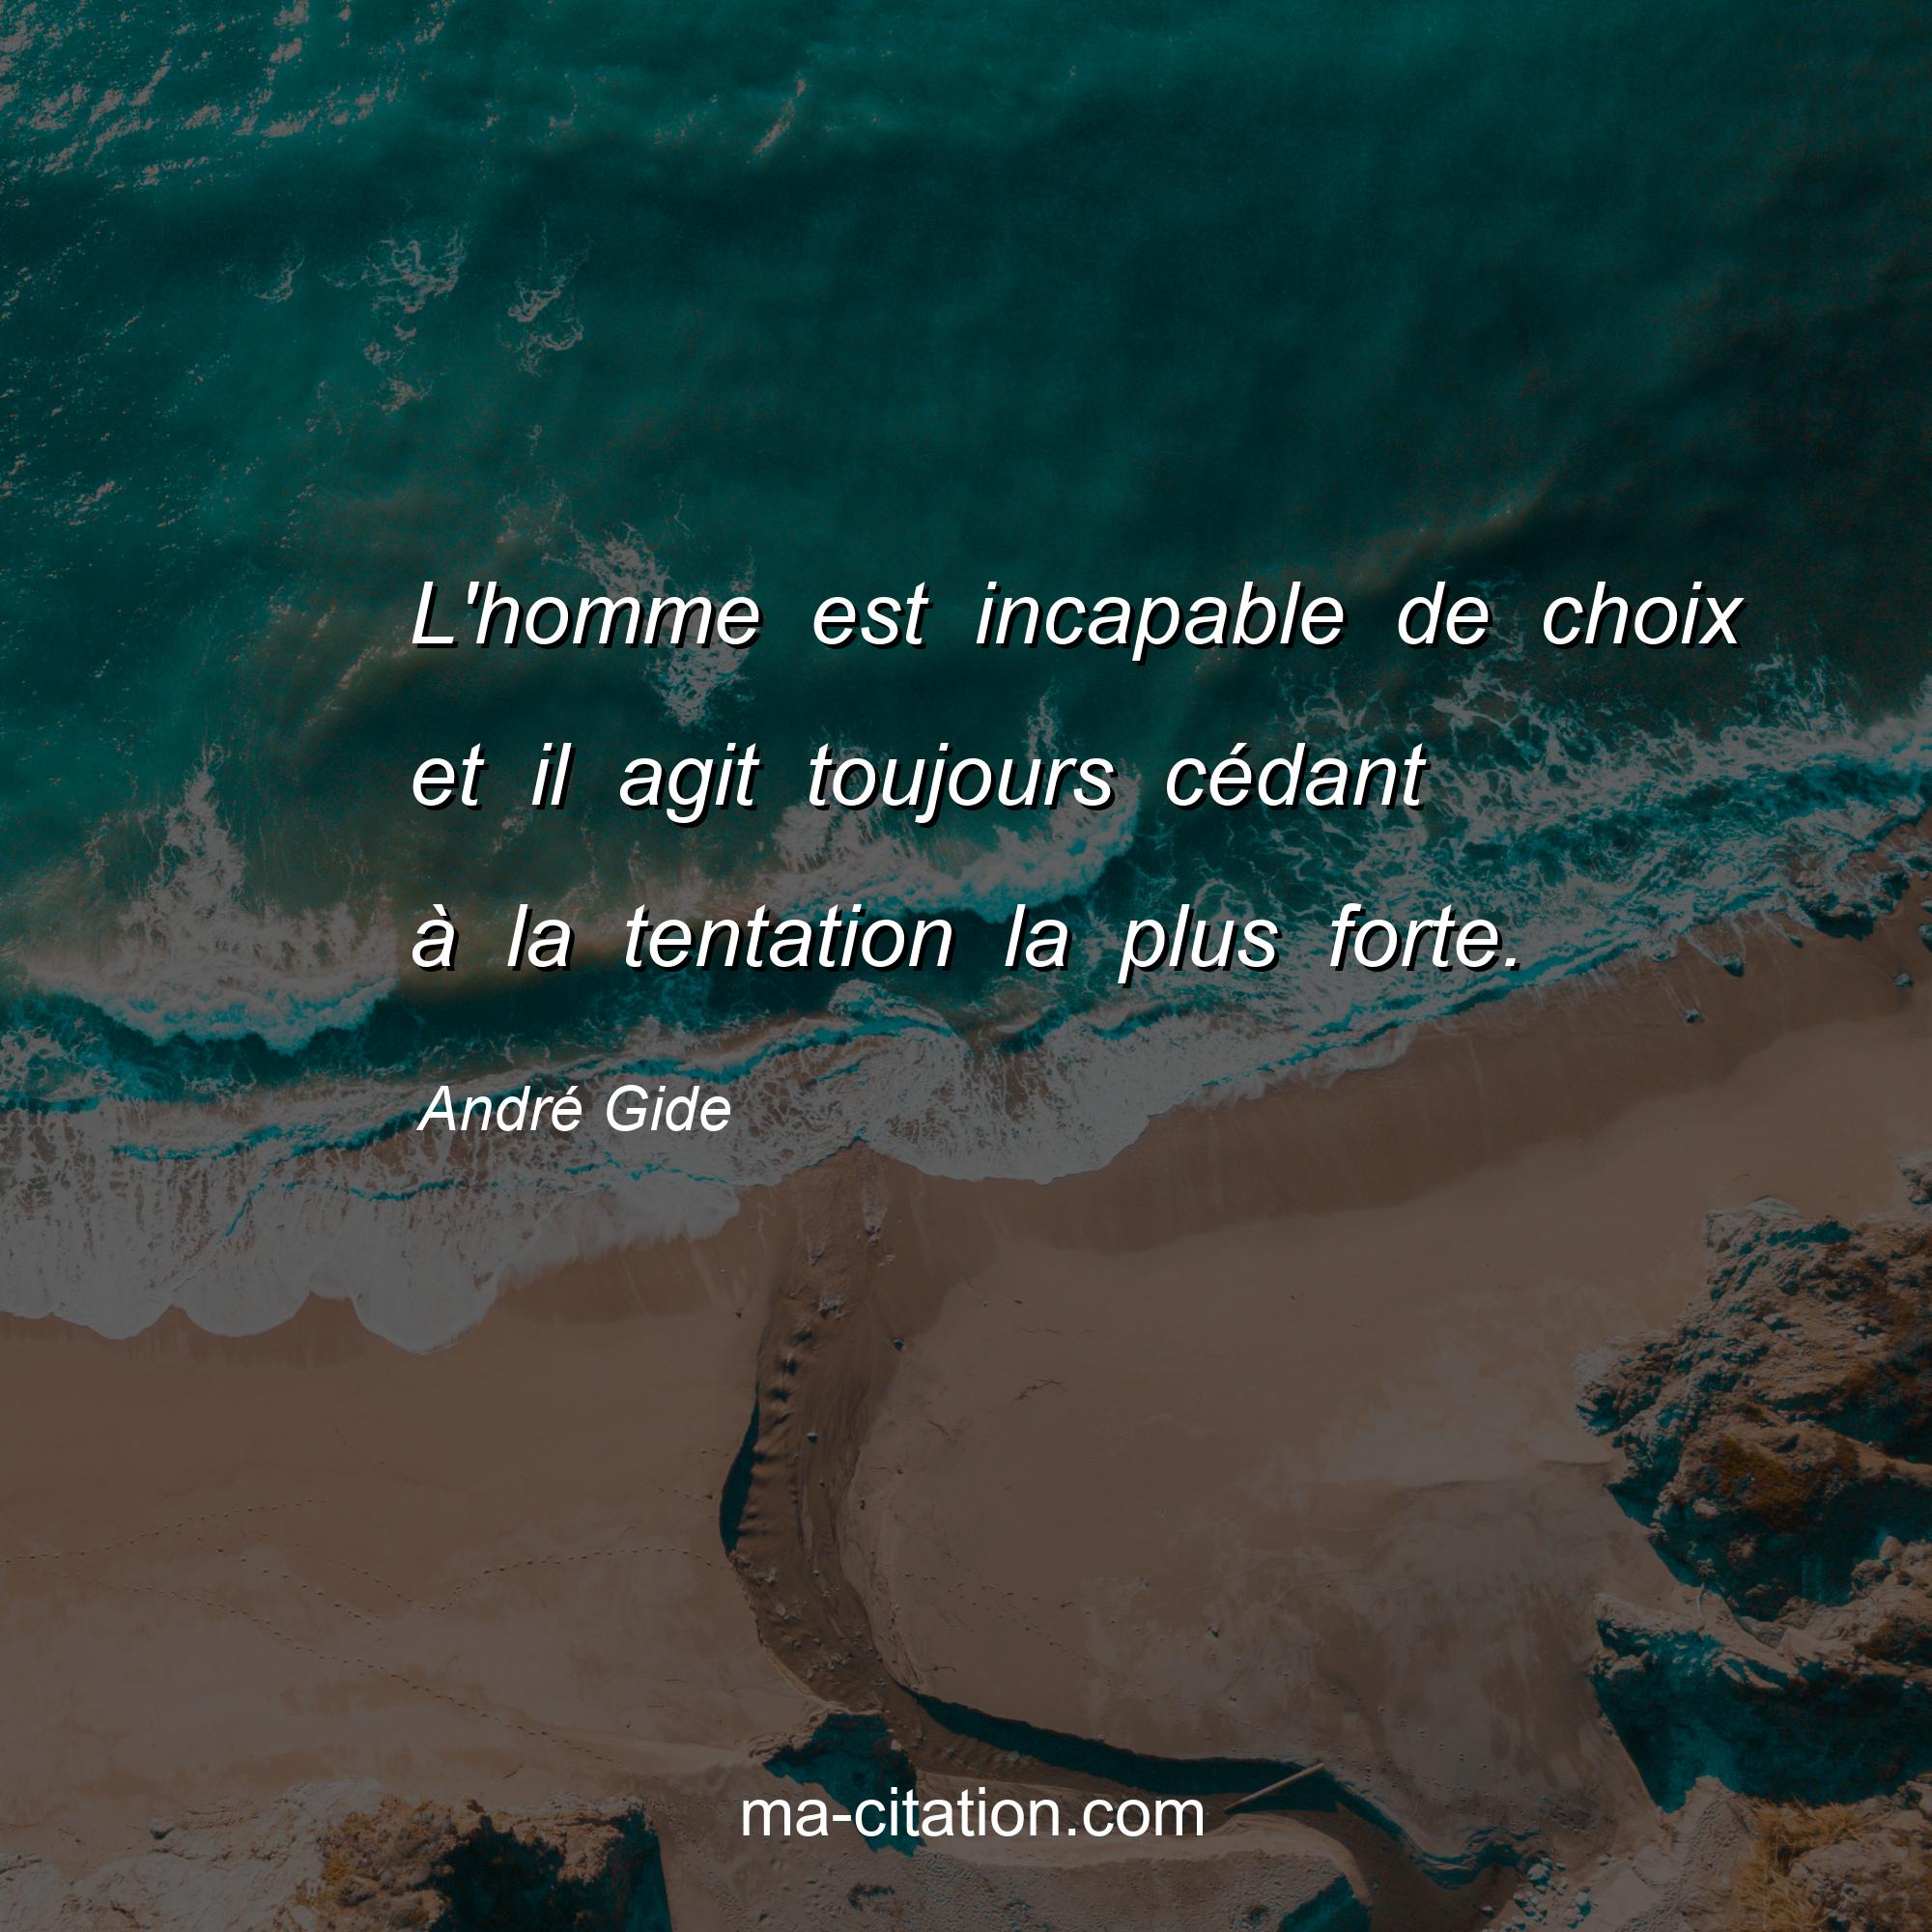 André Gide : L'homme est incapable de choix et il agit toujours cédant à la tentation la plus forte.